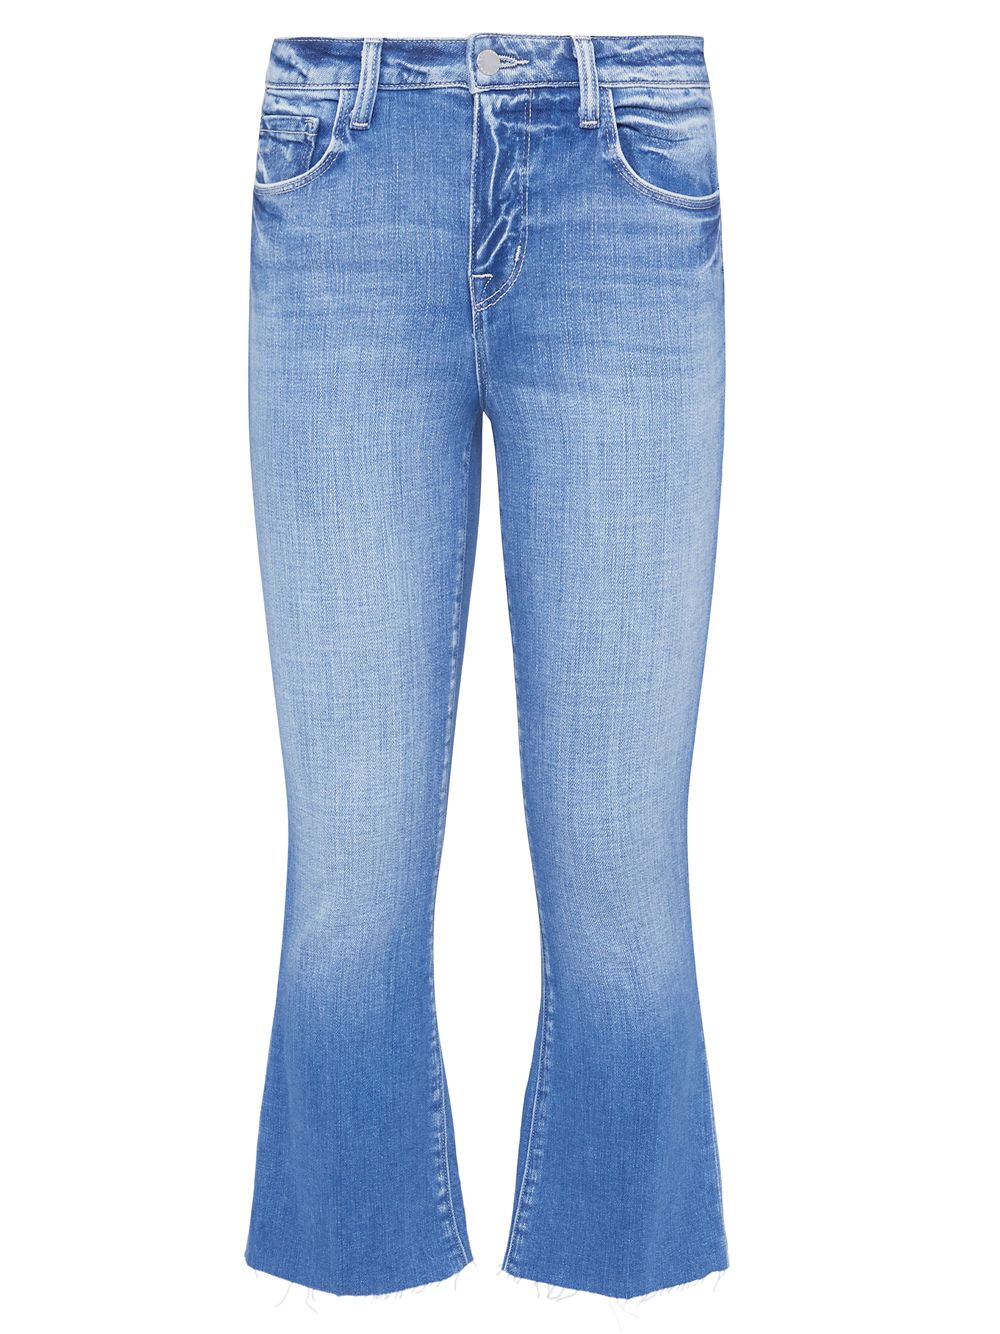 Укороченные расклешенные джинсы Kendra с высокой посадкой L'AGENCE